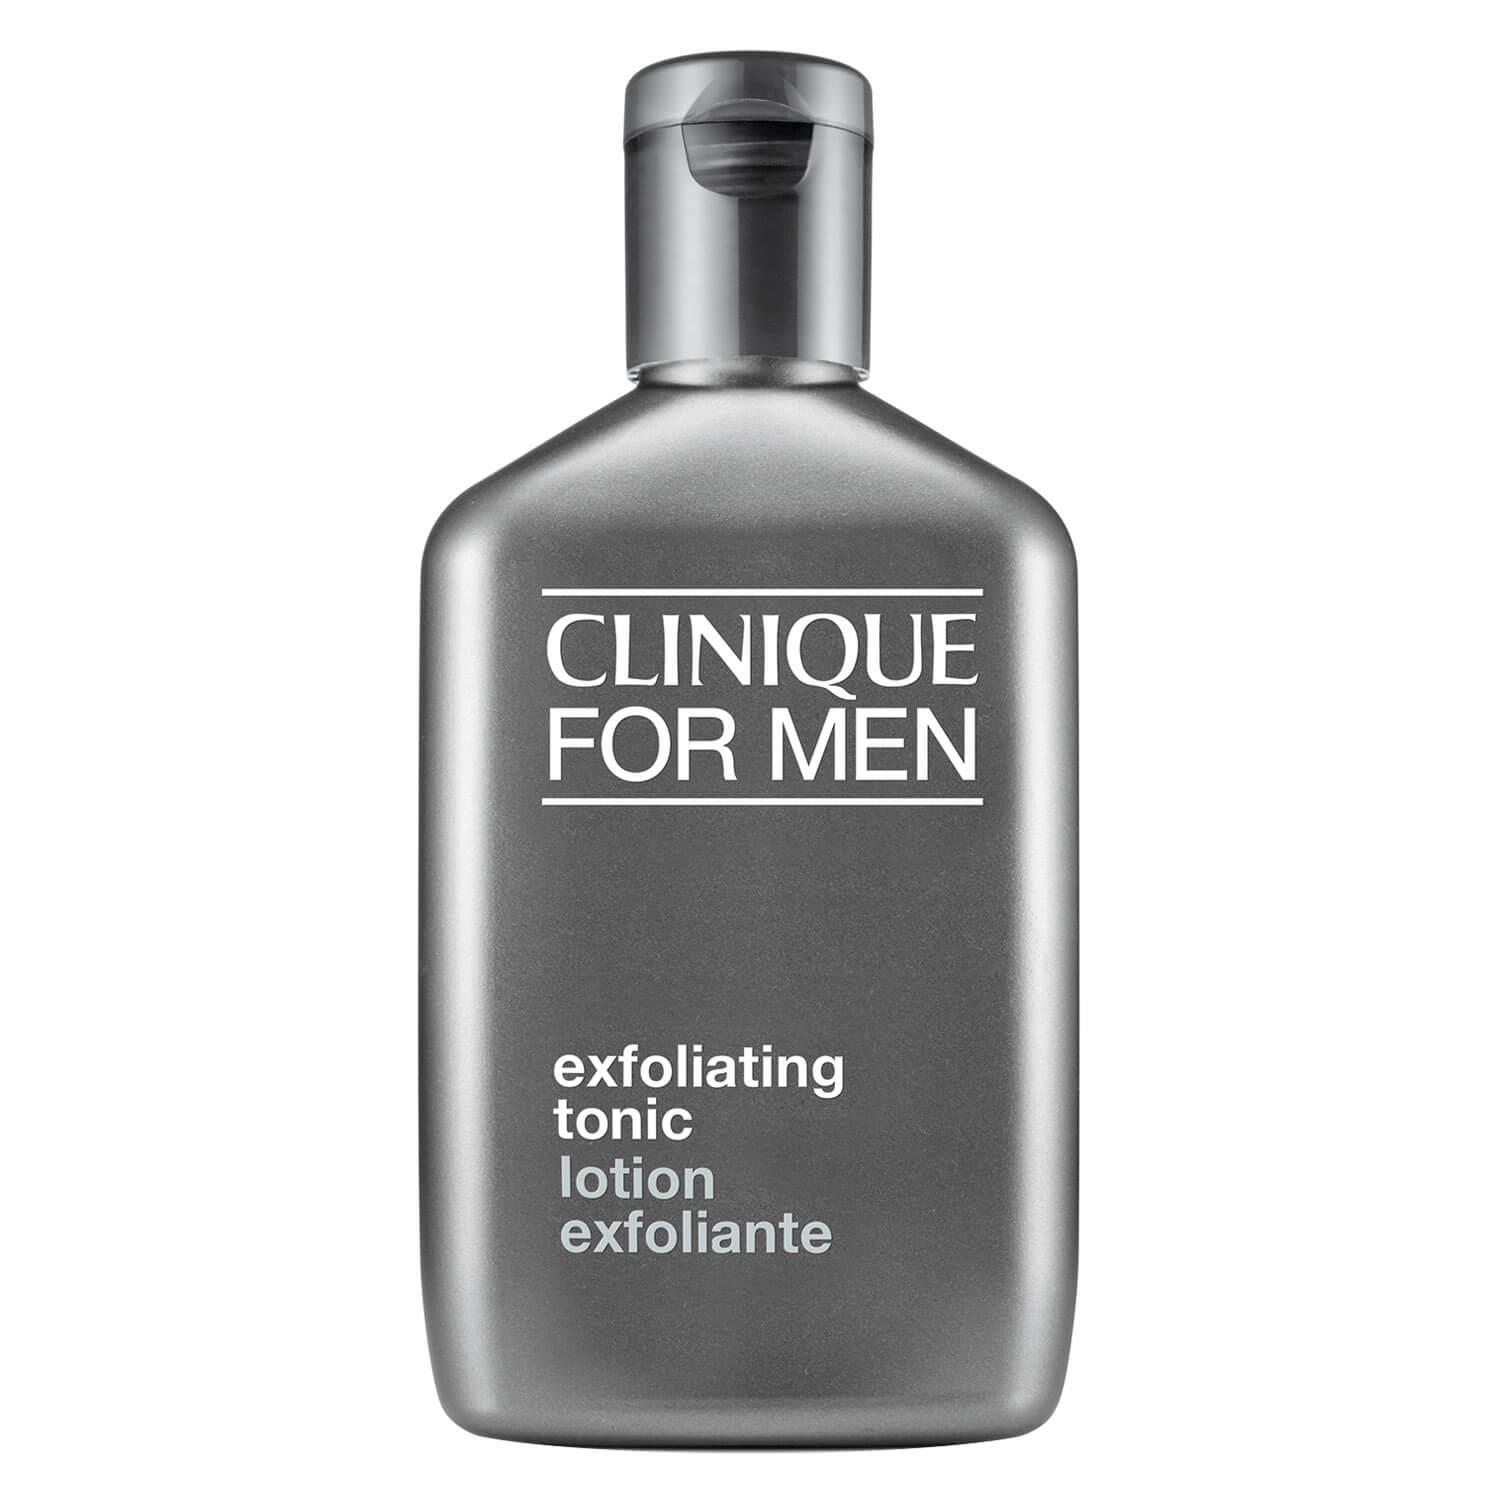 Clinique For Men - Exfoliating Tonic